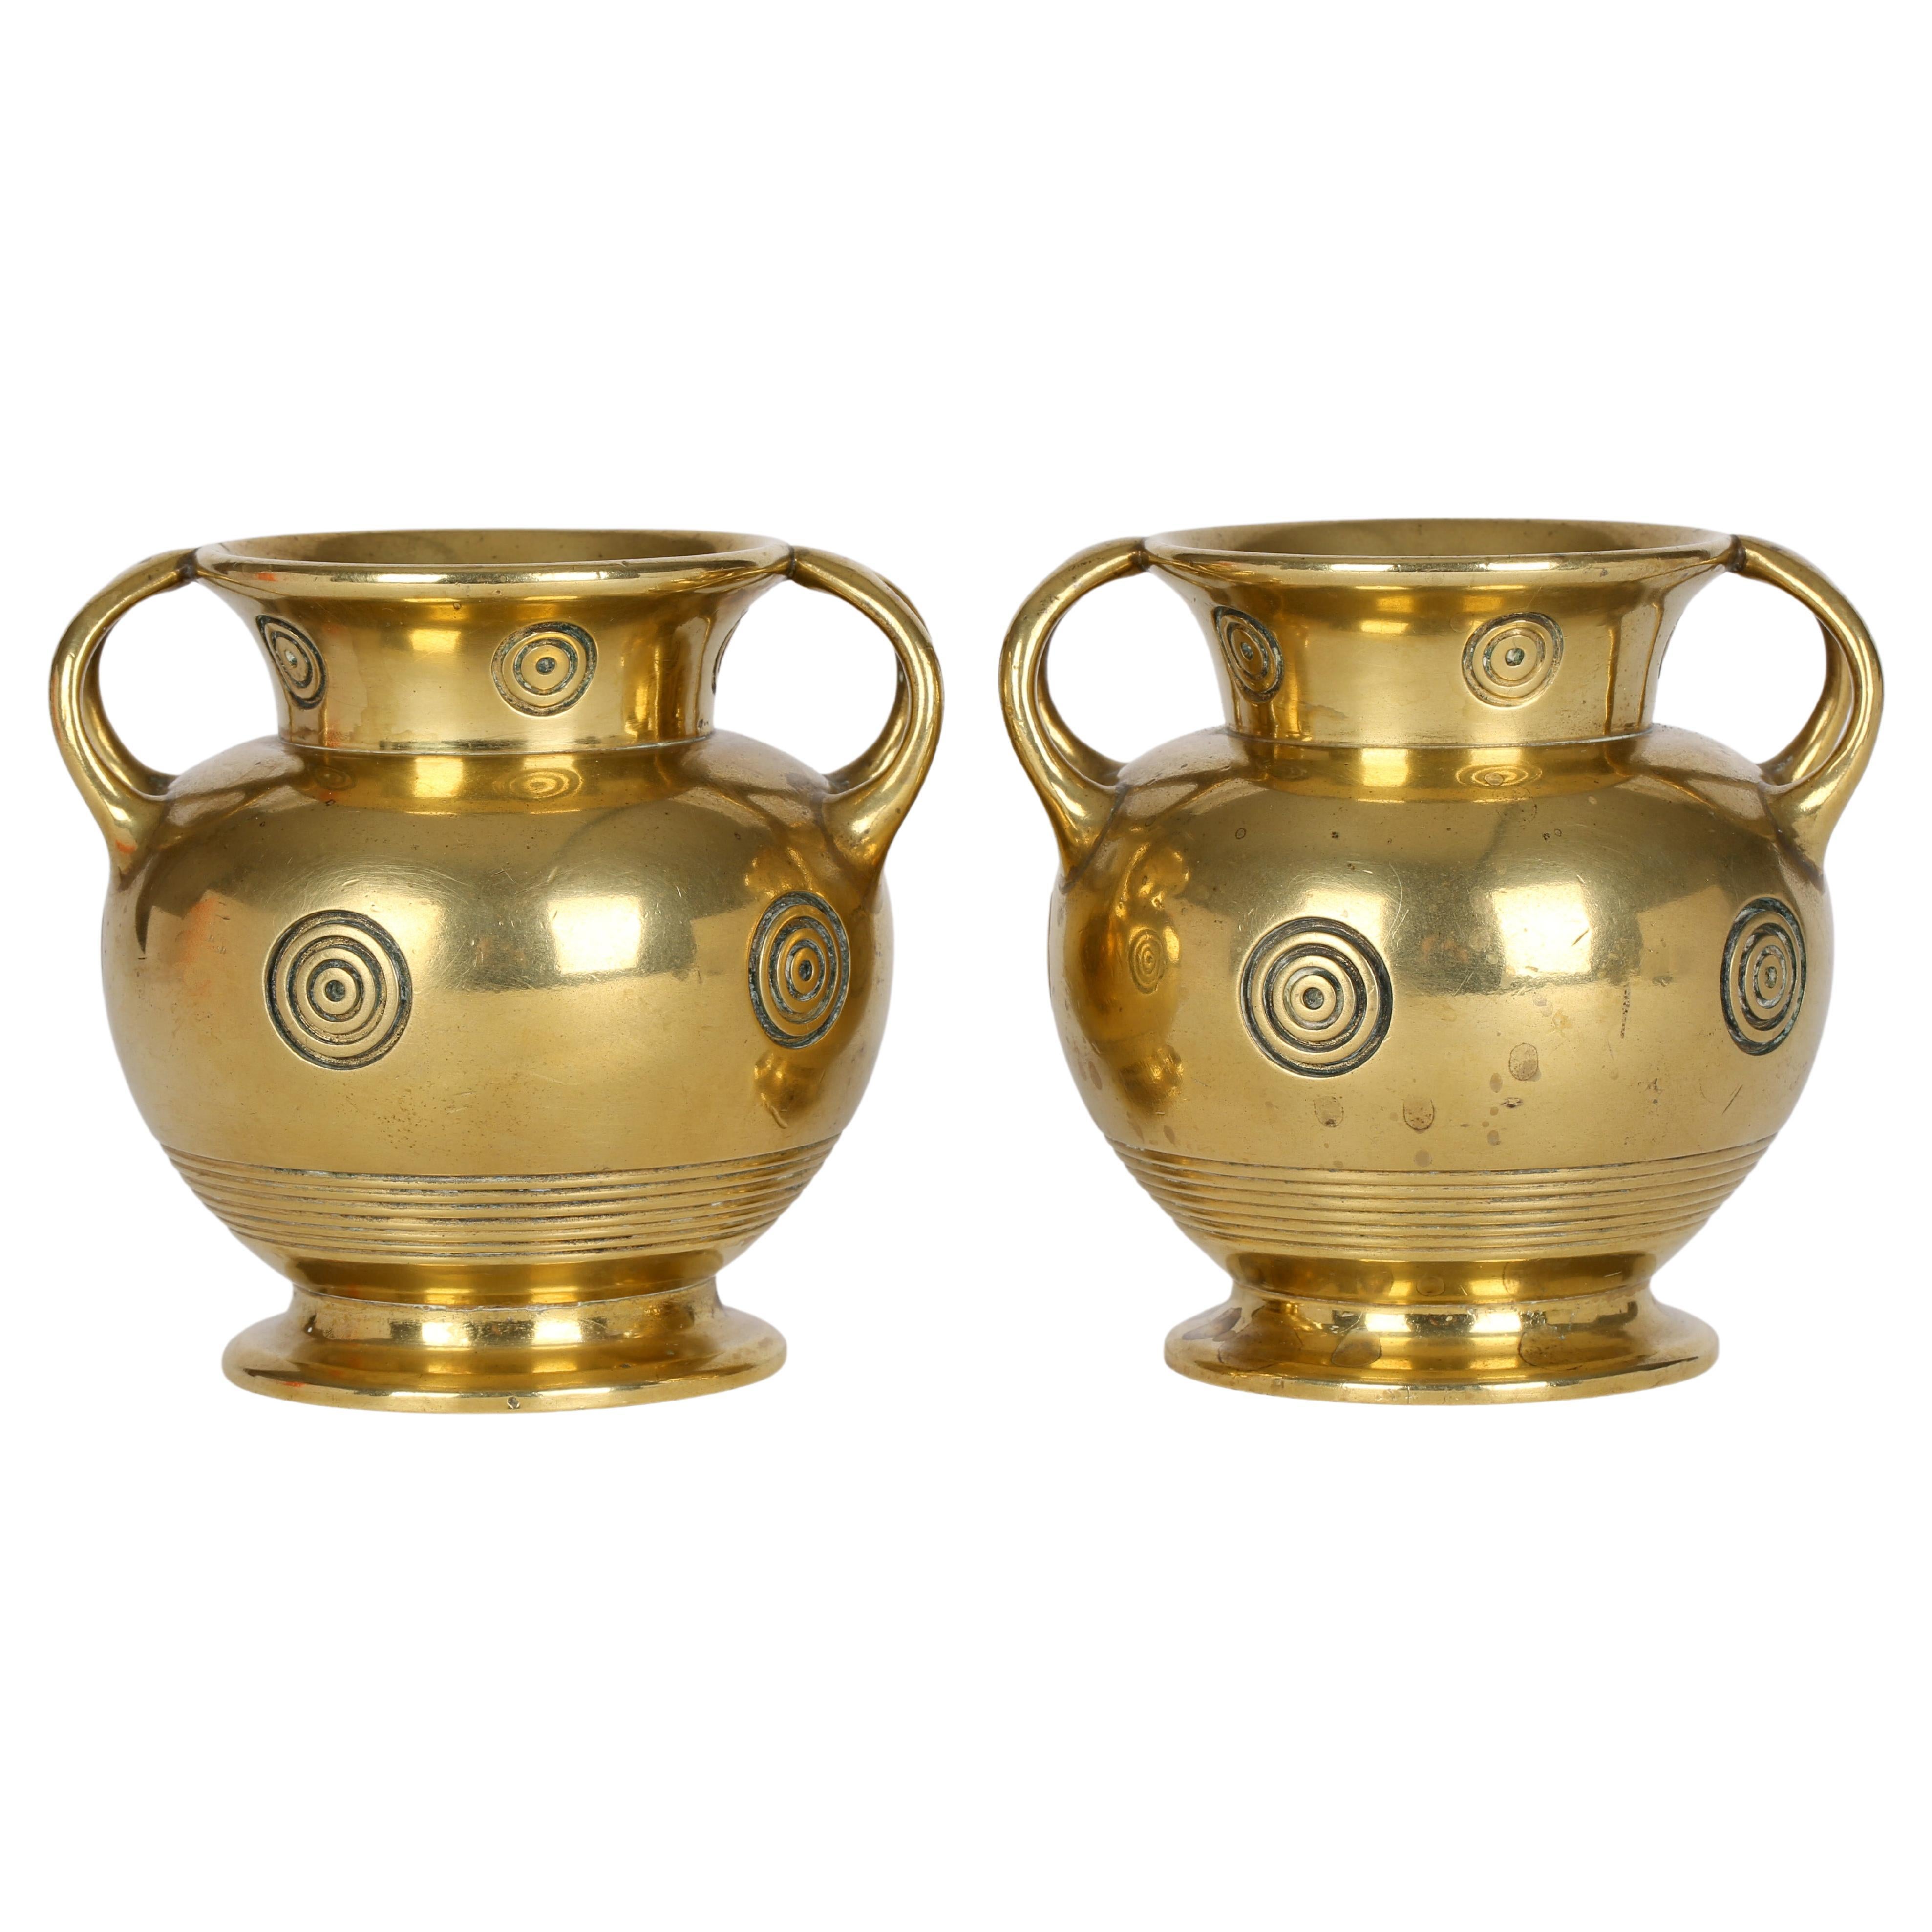 Christopher Dresser Benham & Froud Bullseye Brass Vases